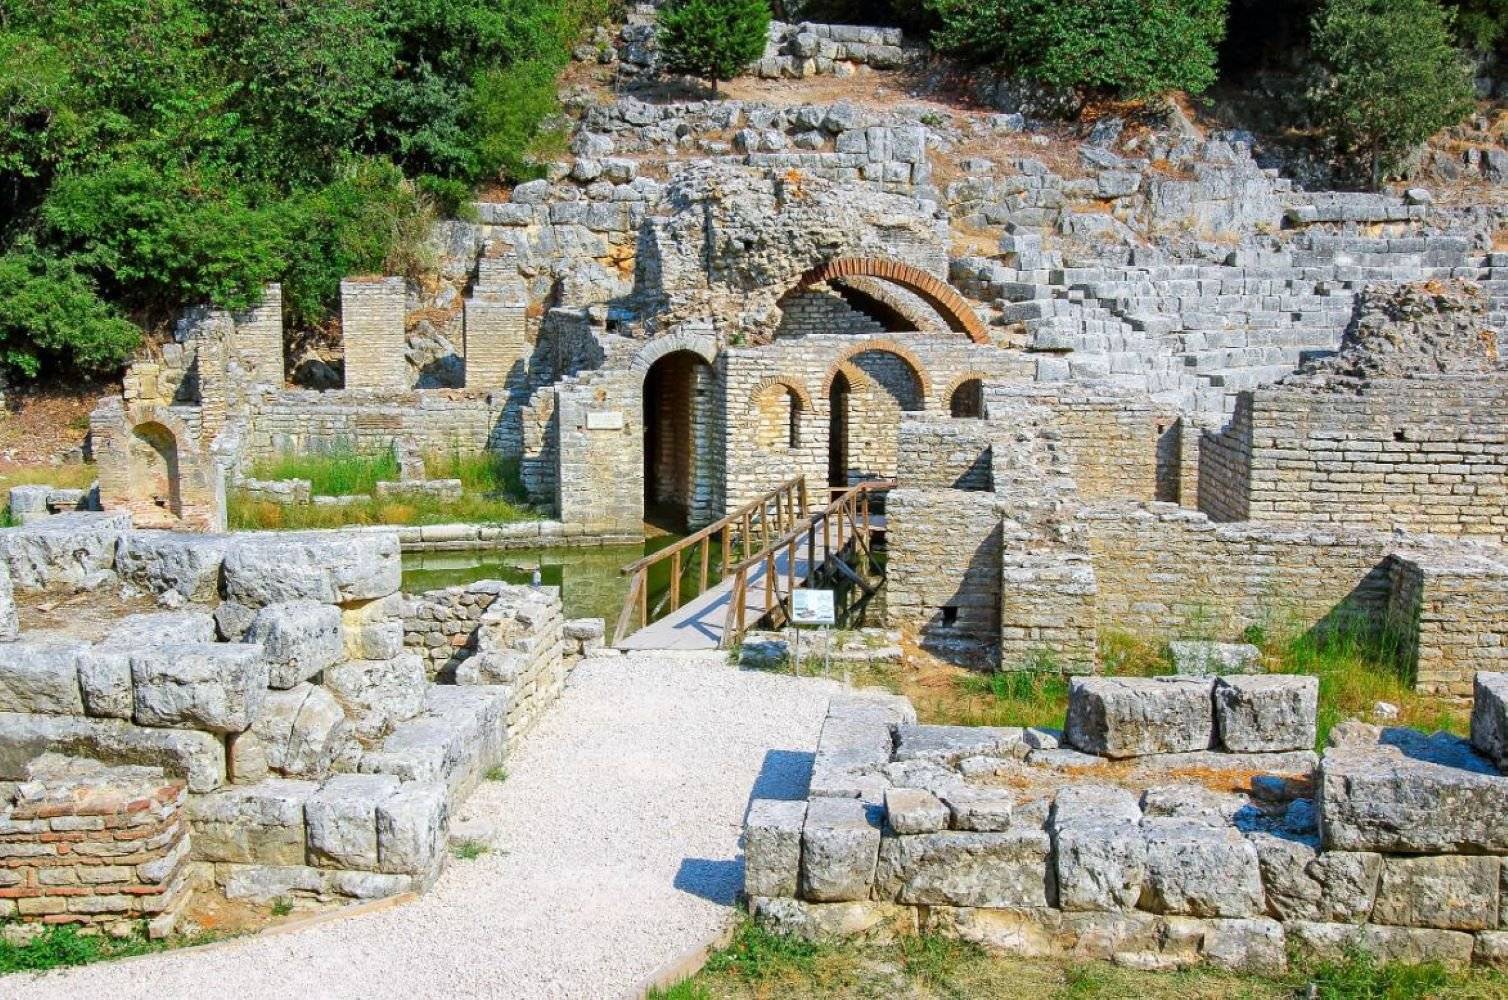 Las ruinas de Butrinto y Gjirokastra, la ciudad de piedra